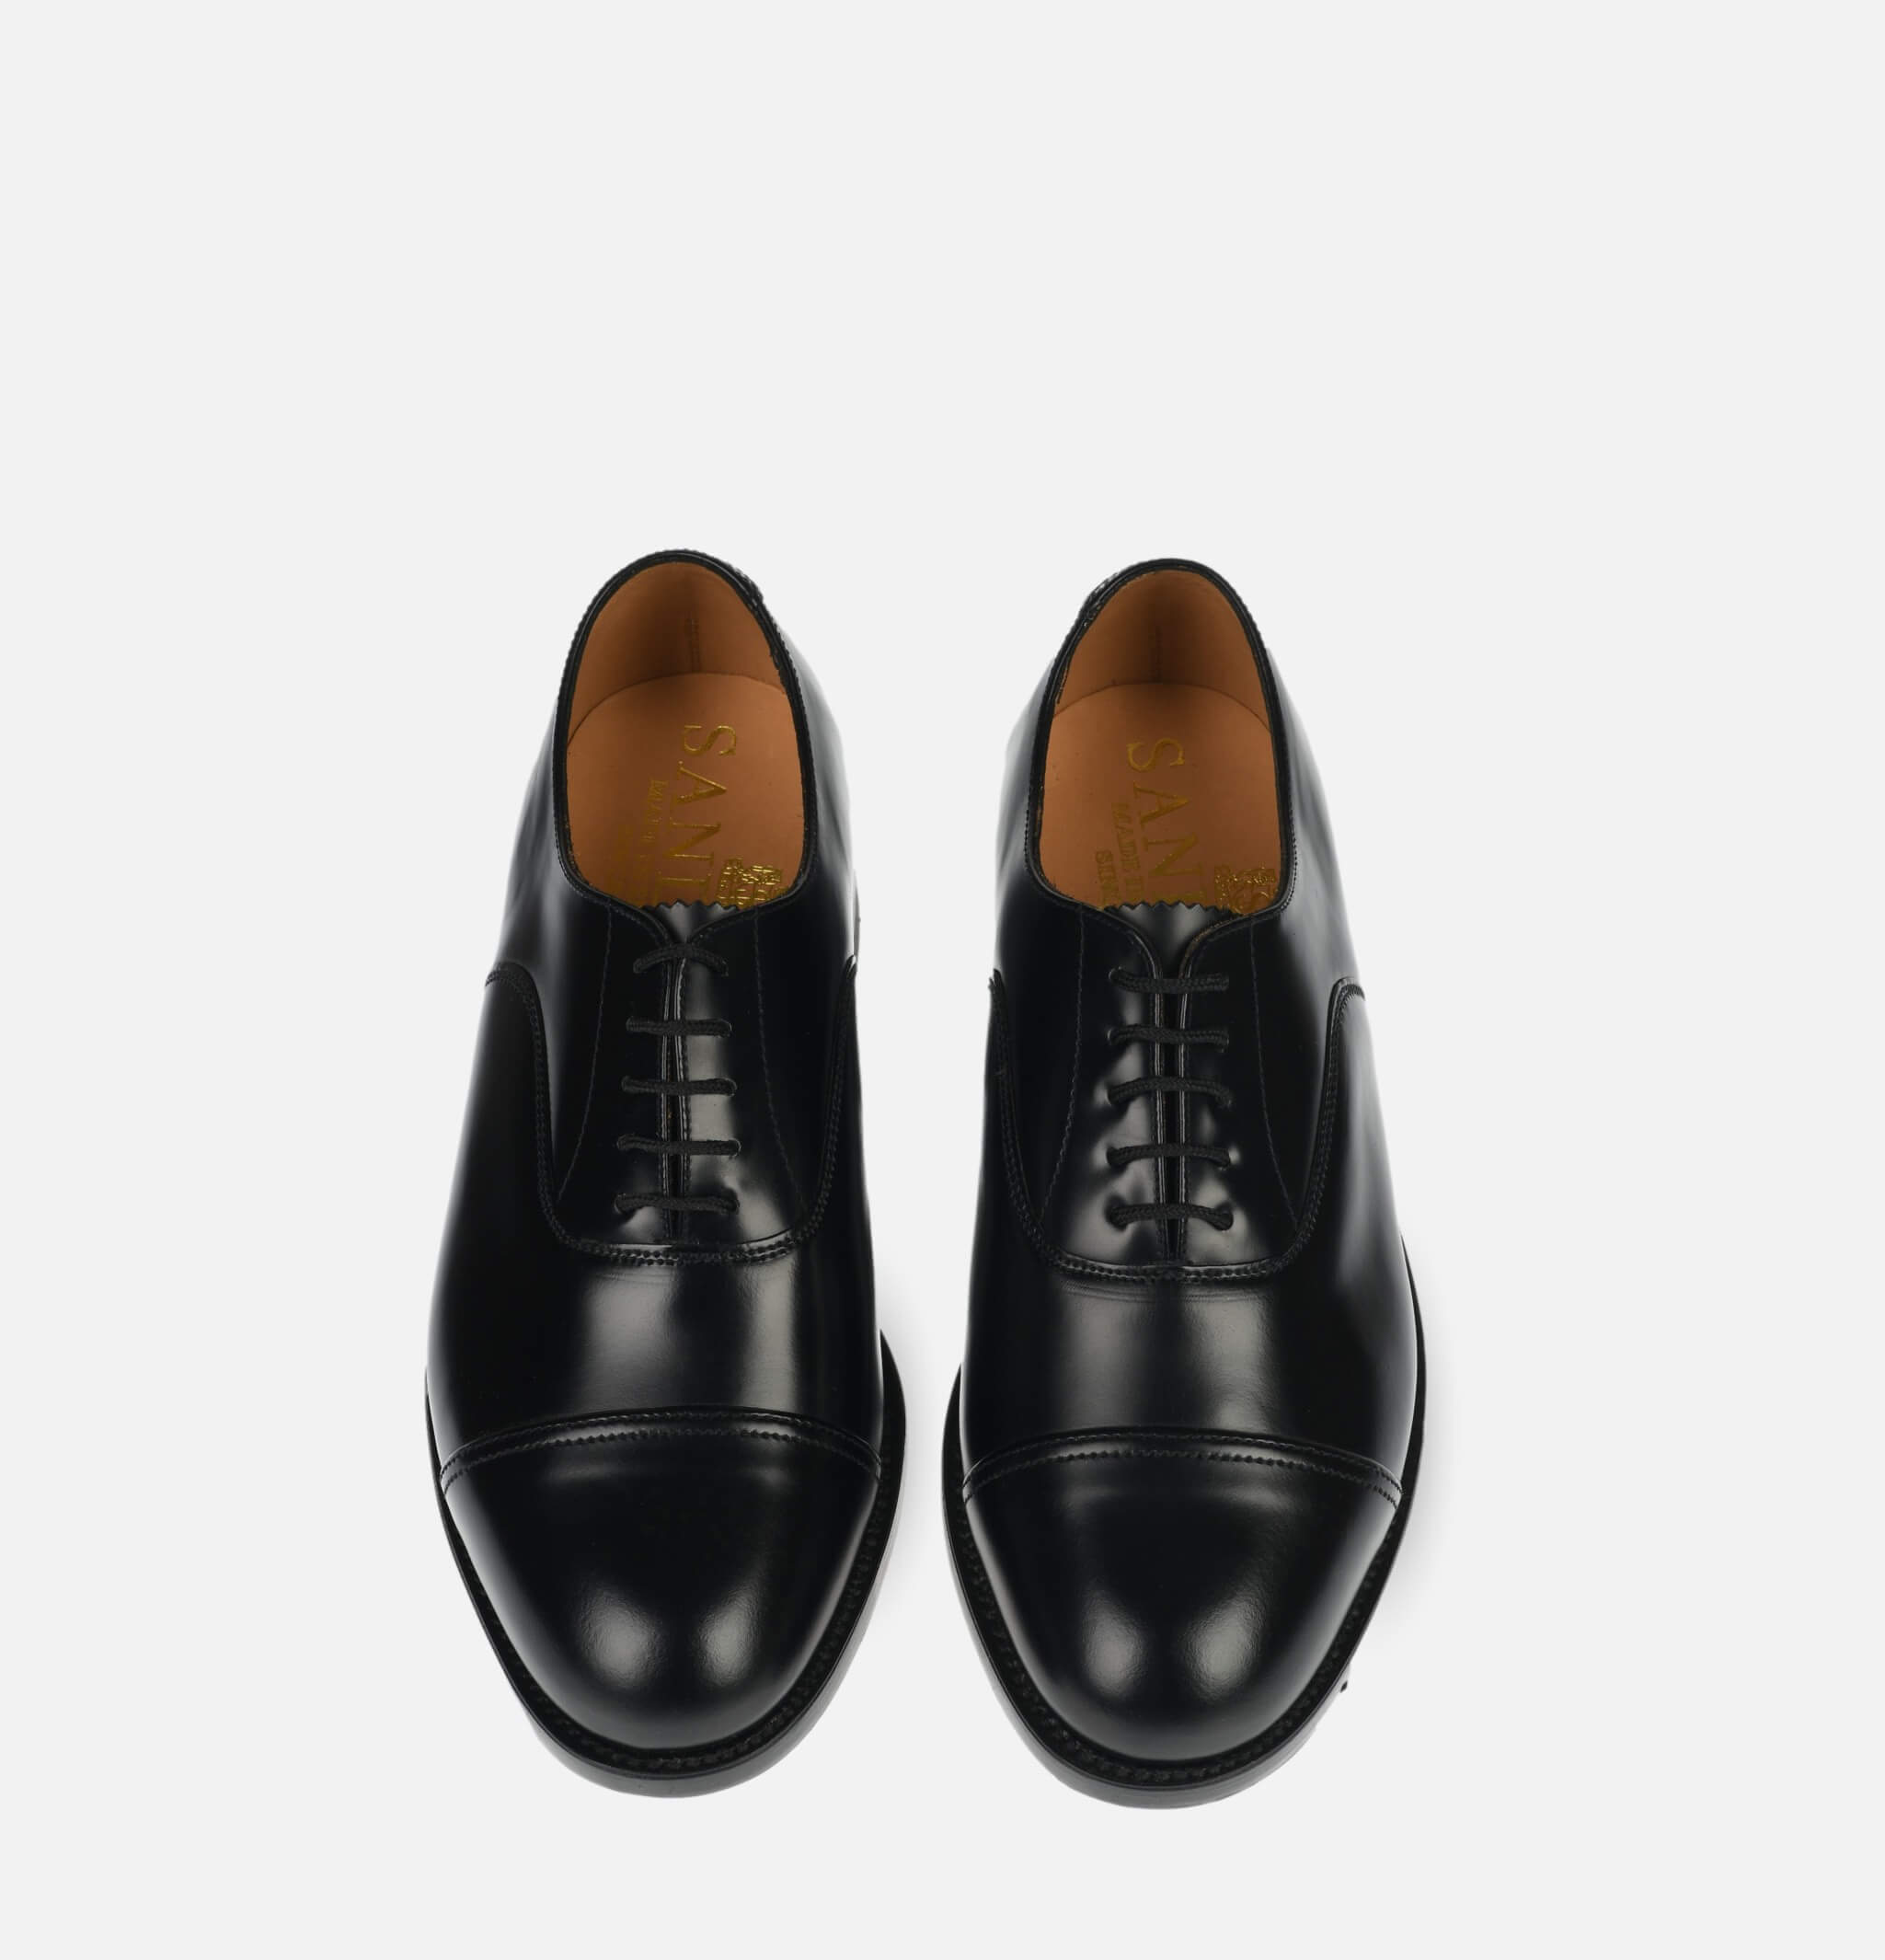 Oxford Shoe Black